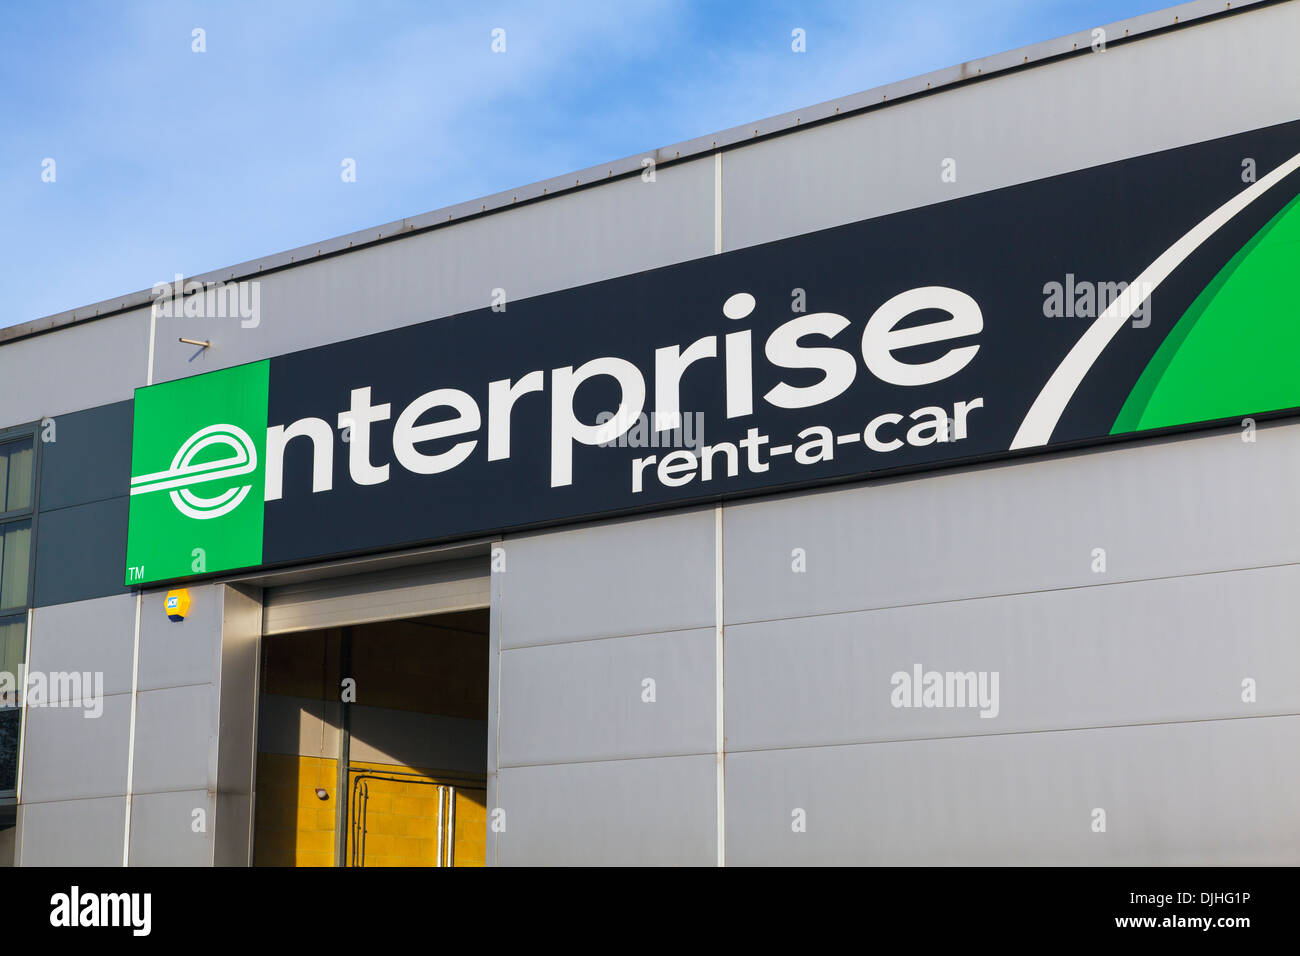 Enterprise car hire Stock Photo